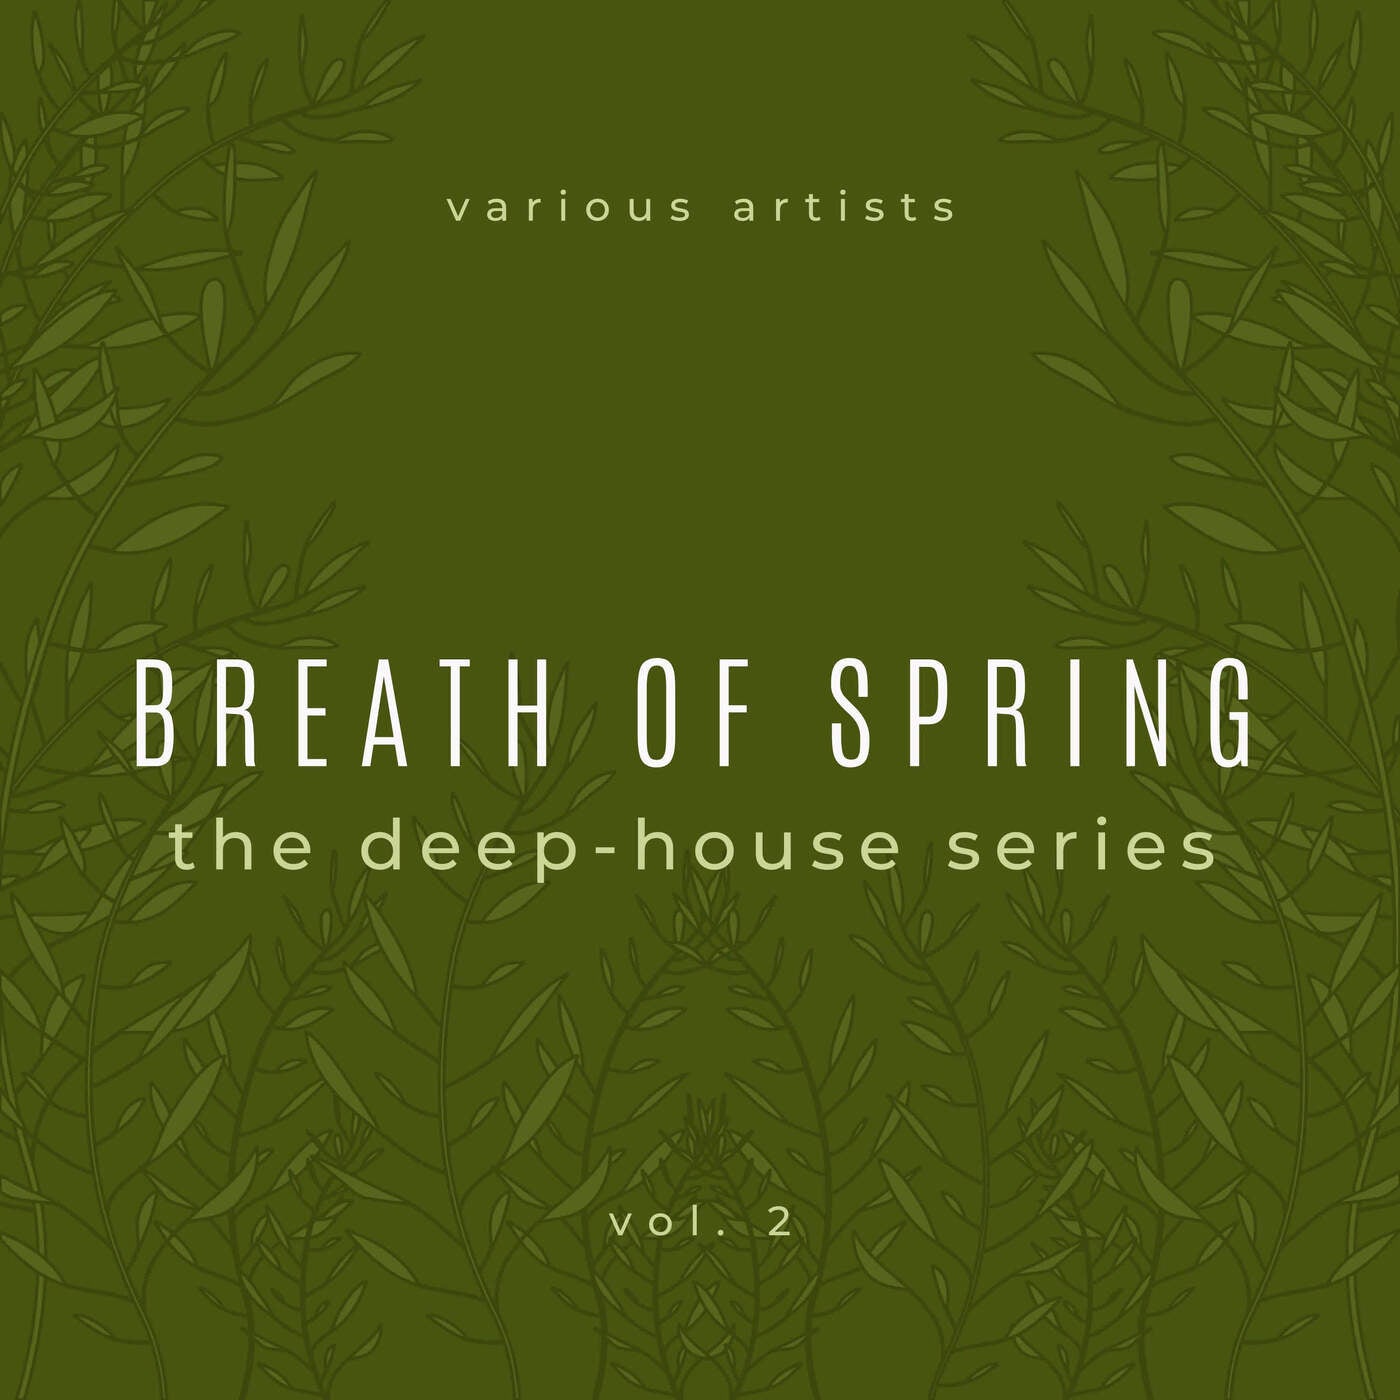 Breath of Spring, Vol. 2